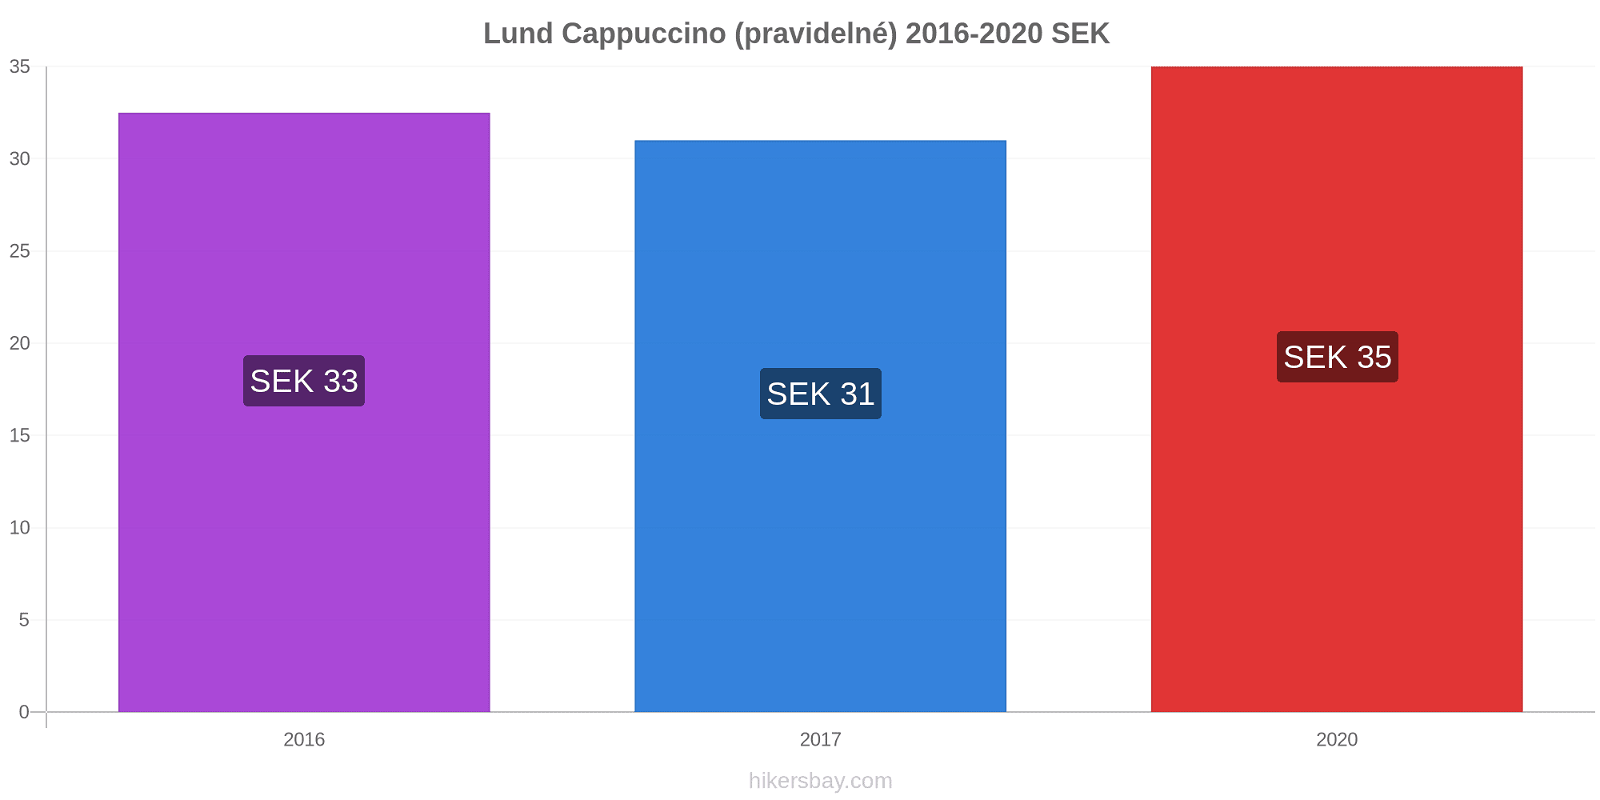 Lund změny cen Cappuccino (pravidelné) hikersbay.com